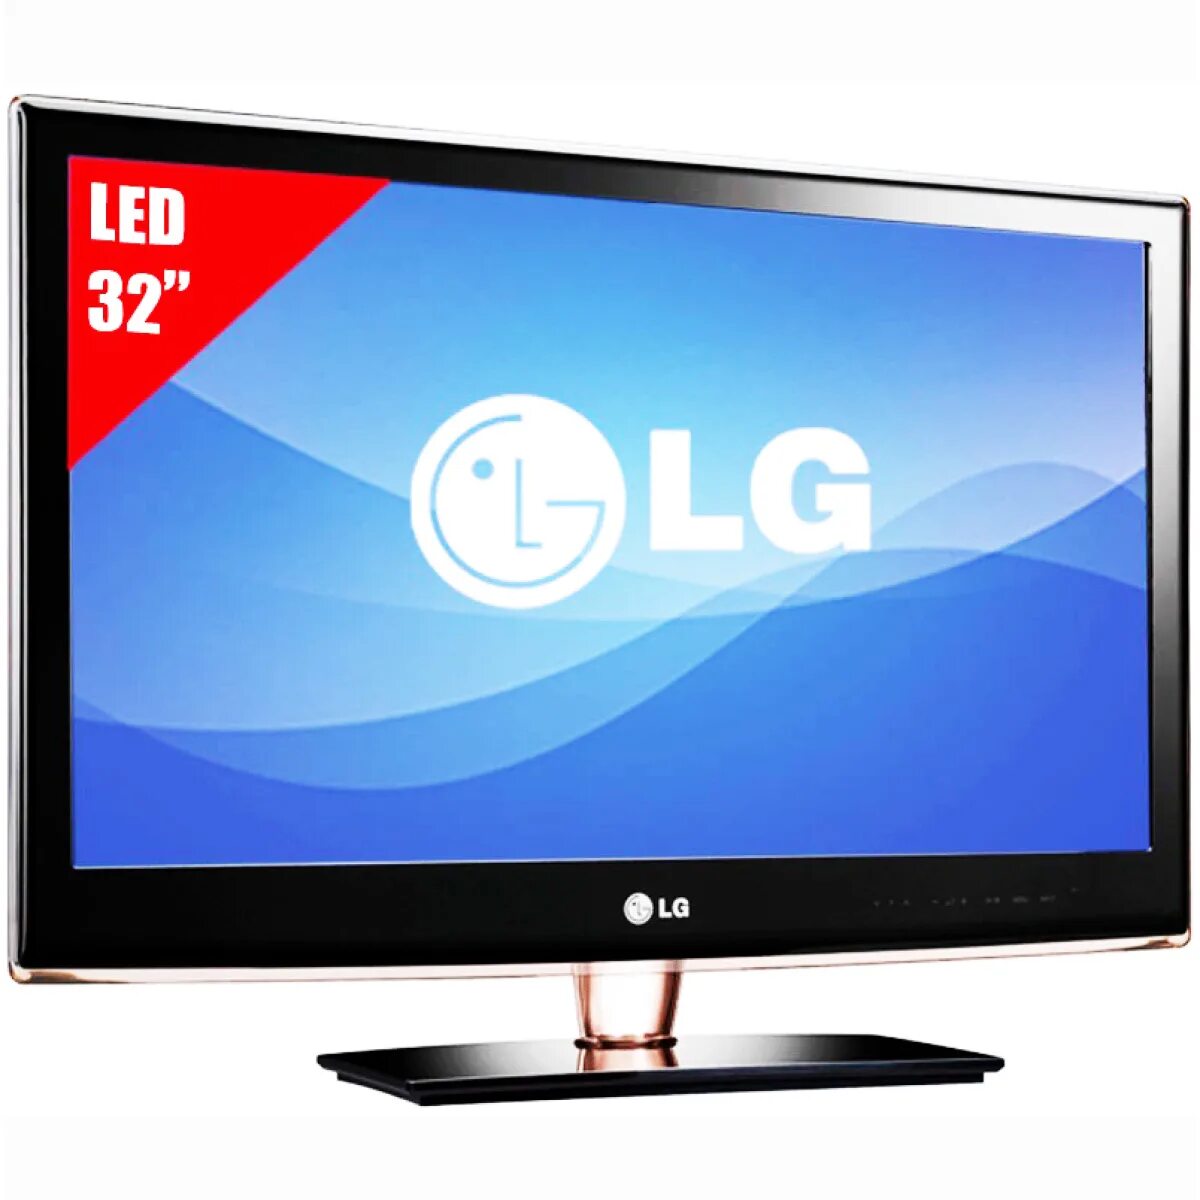 Купить lg в днс. Телевизор LG led 32. LG led LCD 3d TV 32lb2. LG 32 led Television. ДНС телевизоры 32 дюйма Лджи.